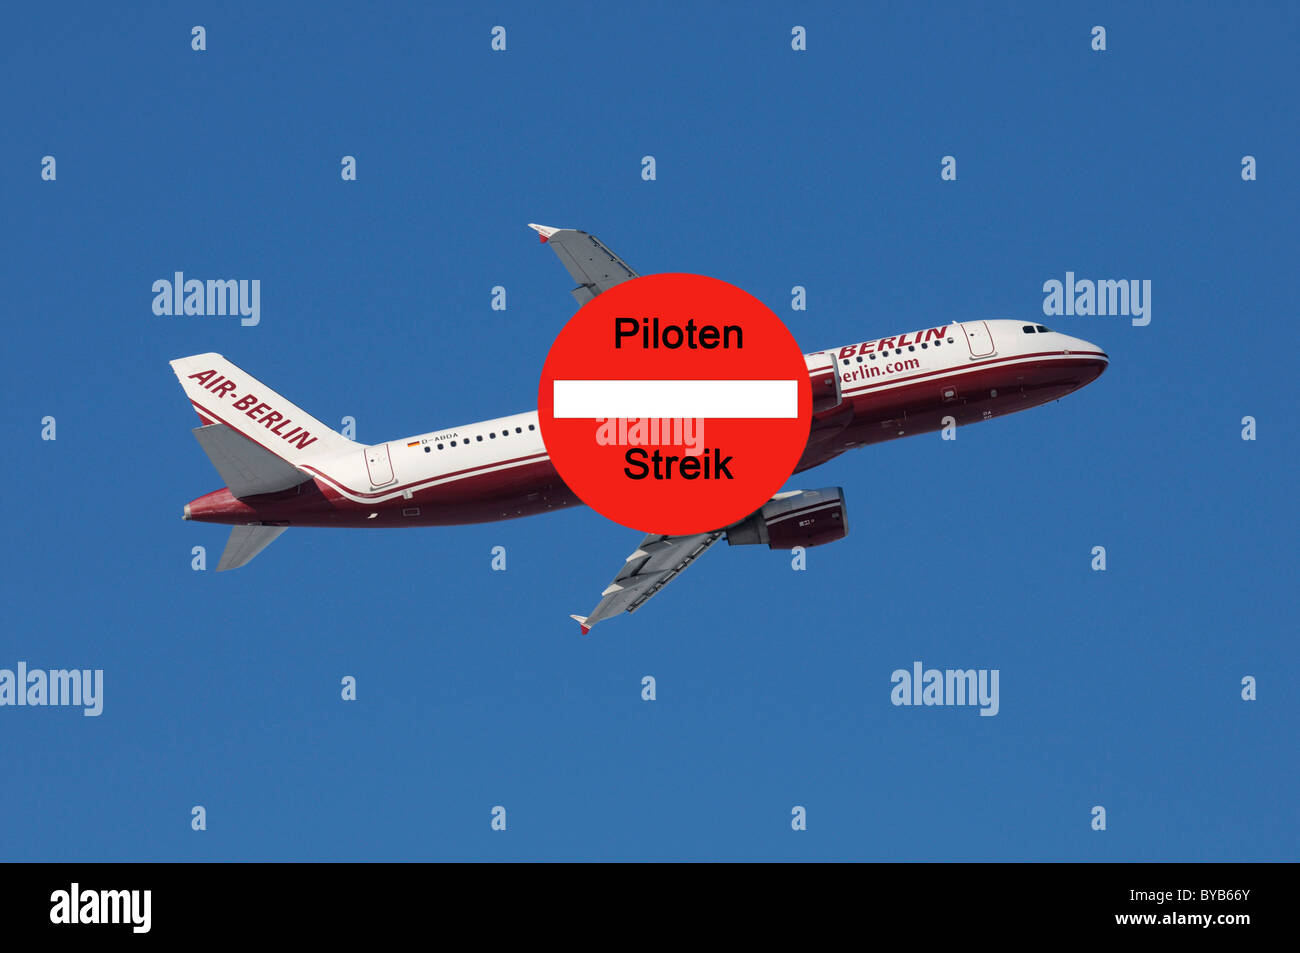 Aeromobili con segno di sciopero, immagine simbolica per il pilota di colpire in airberlin Foto Stock